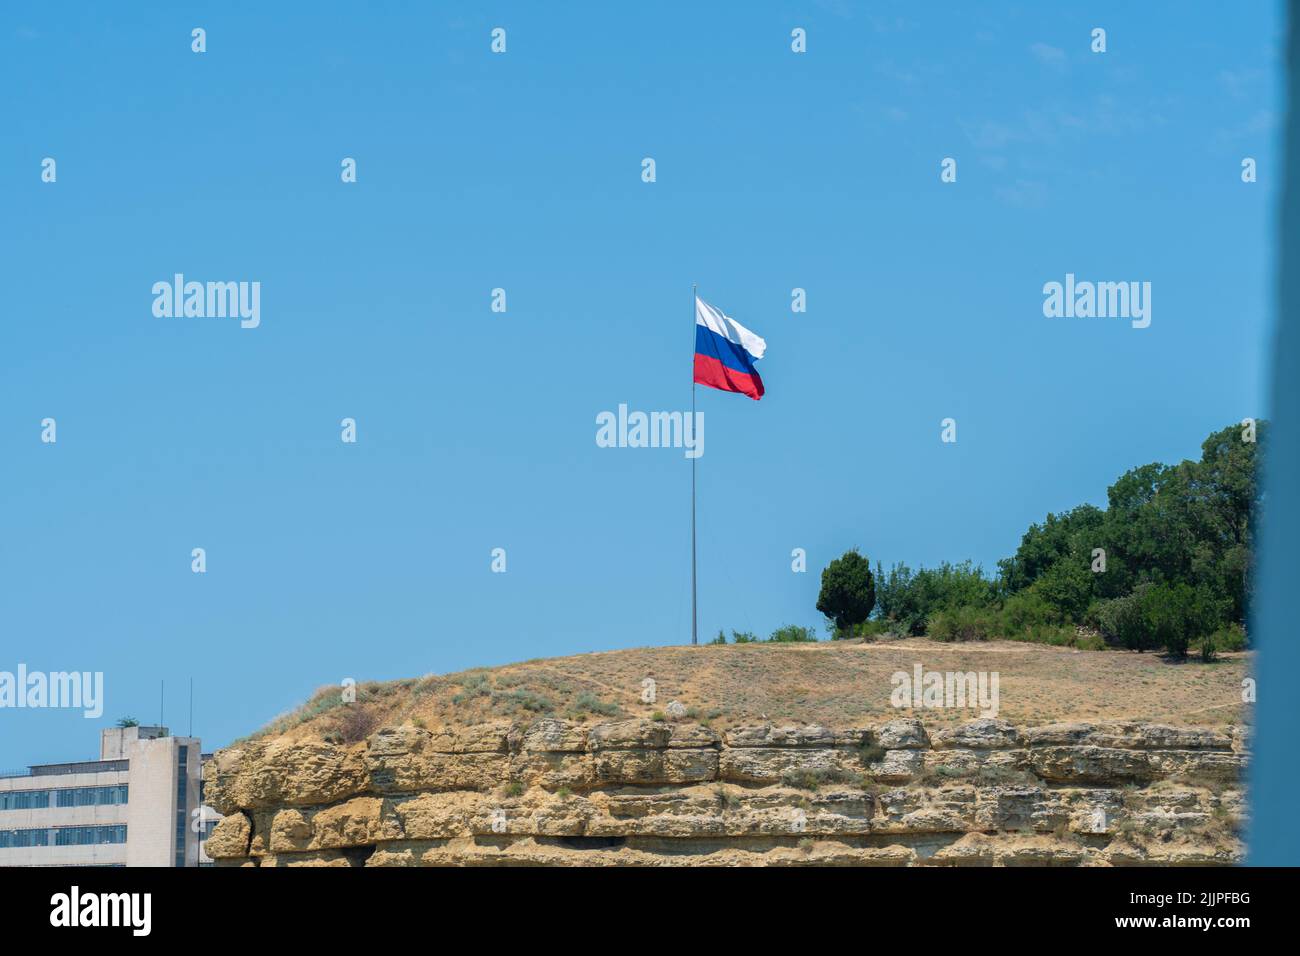 Die russische Flagge winkt am vereinzelten Himmelsweg und stutzt blaues Regierungsemblem, von der Unabhängigkeit der Wirtschaft und dem symbolischen russischen politischen Gefüge Stockfoto